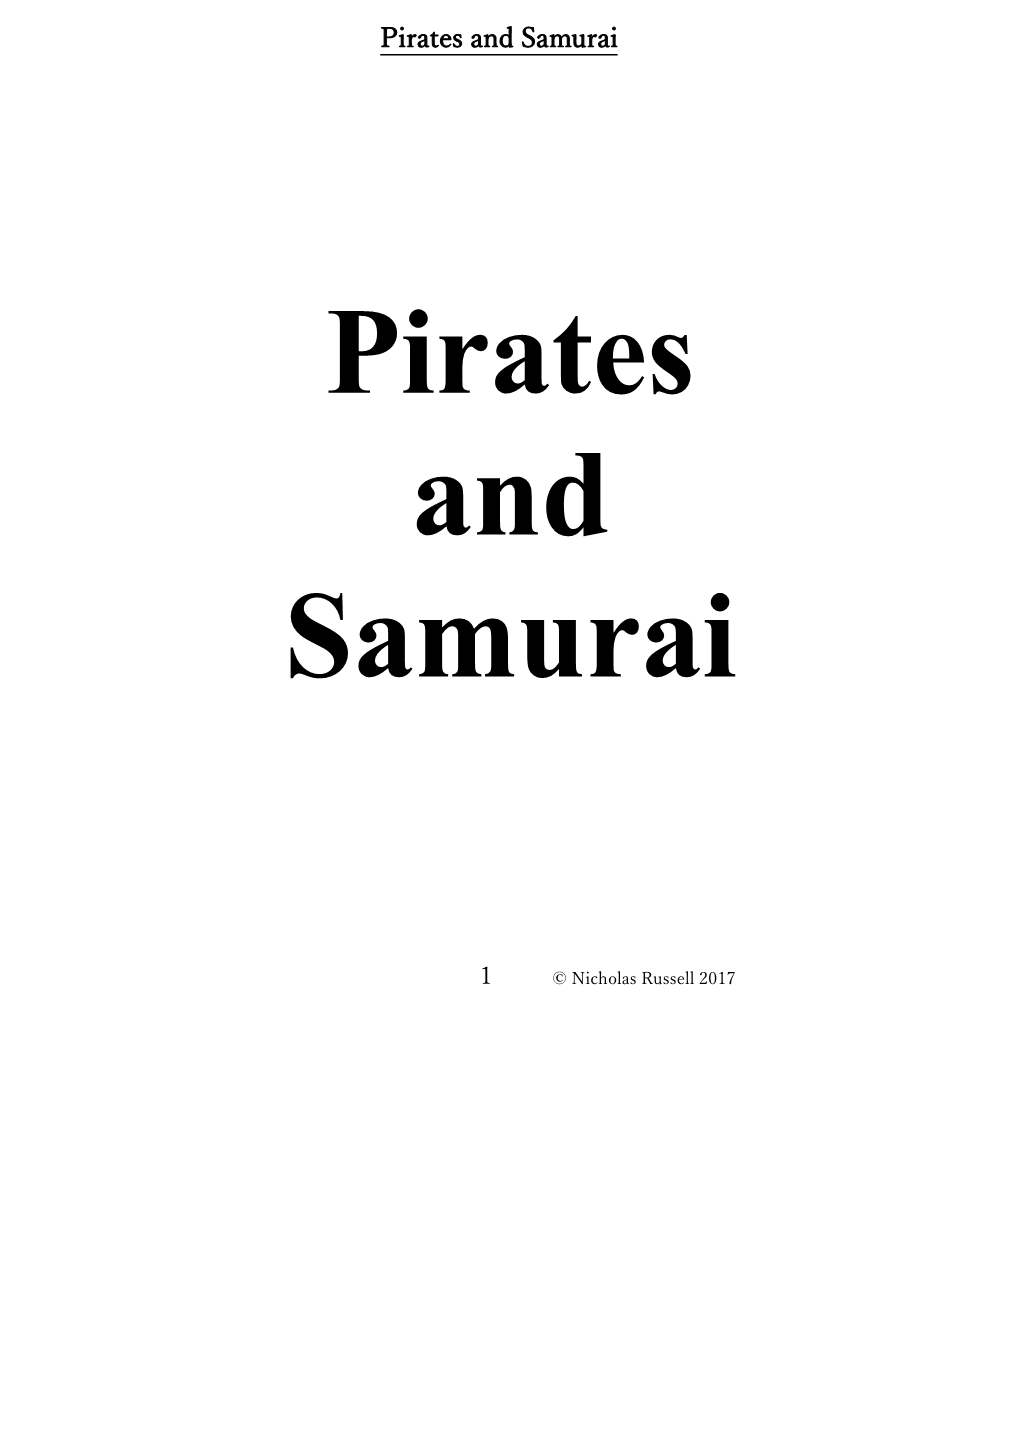 Pirates and Samurai